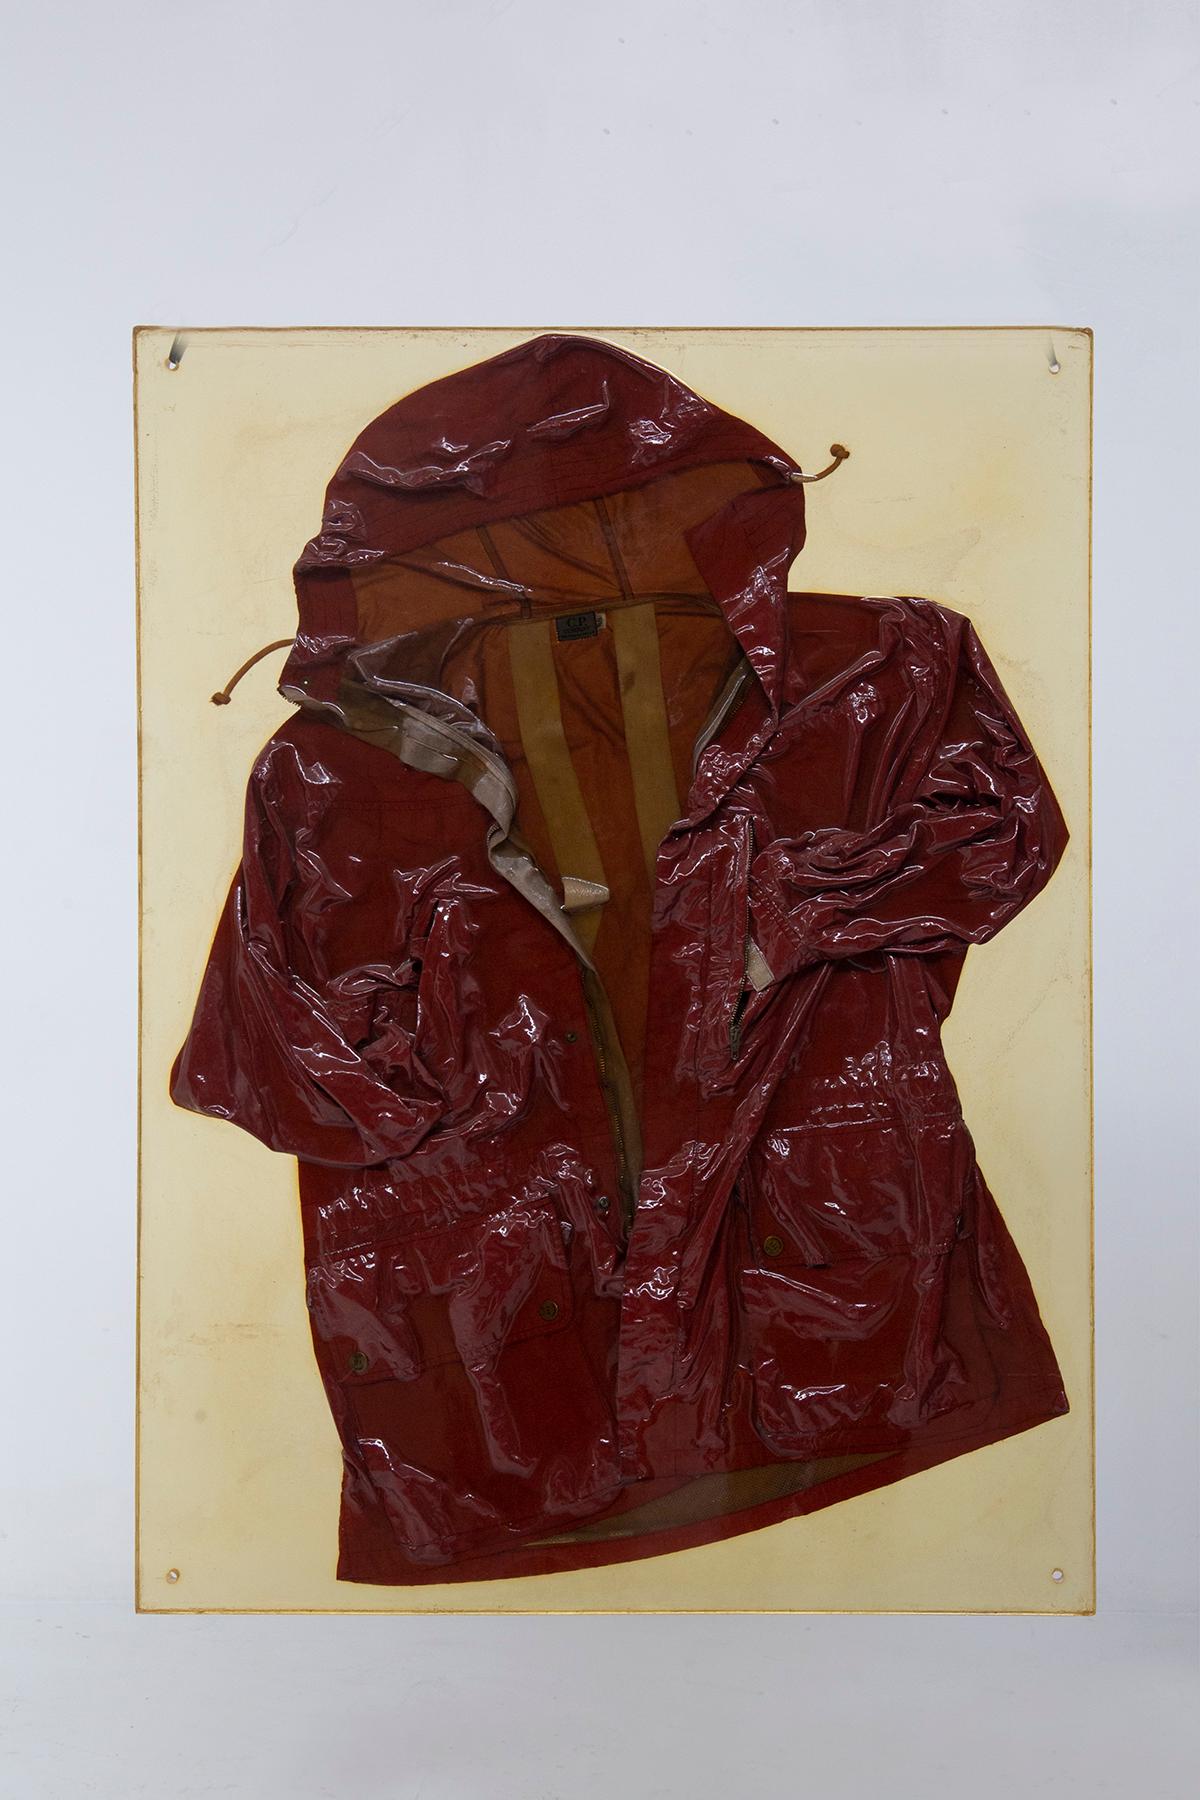 Hier sehen Sie ein wildes und ungezähmtes Stück CP-Geschichte, eine rätselhafte Schatztruhe des stilistischen Könnens von Massimo Osti, verpackt in einer Jacke, die sich den Konventionen entzieht. Dieses außergewöhnliche Kleidungsstück, das in einem